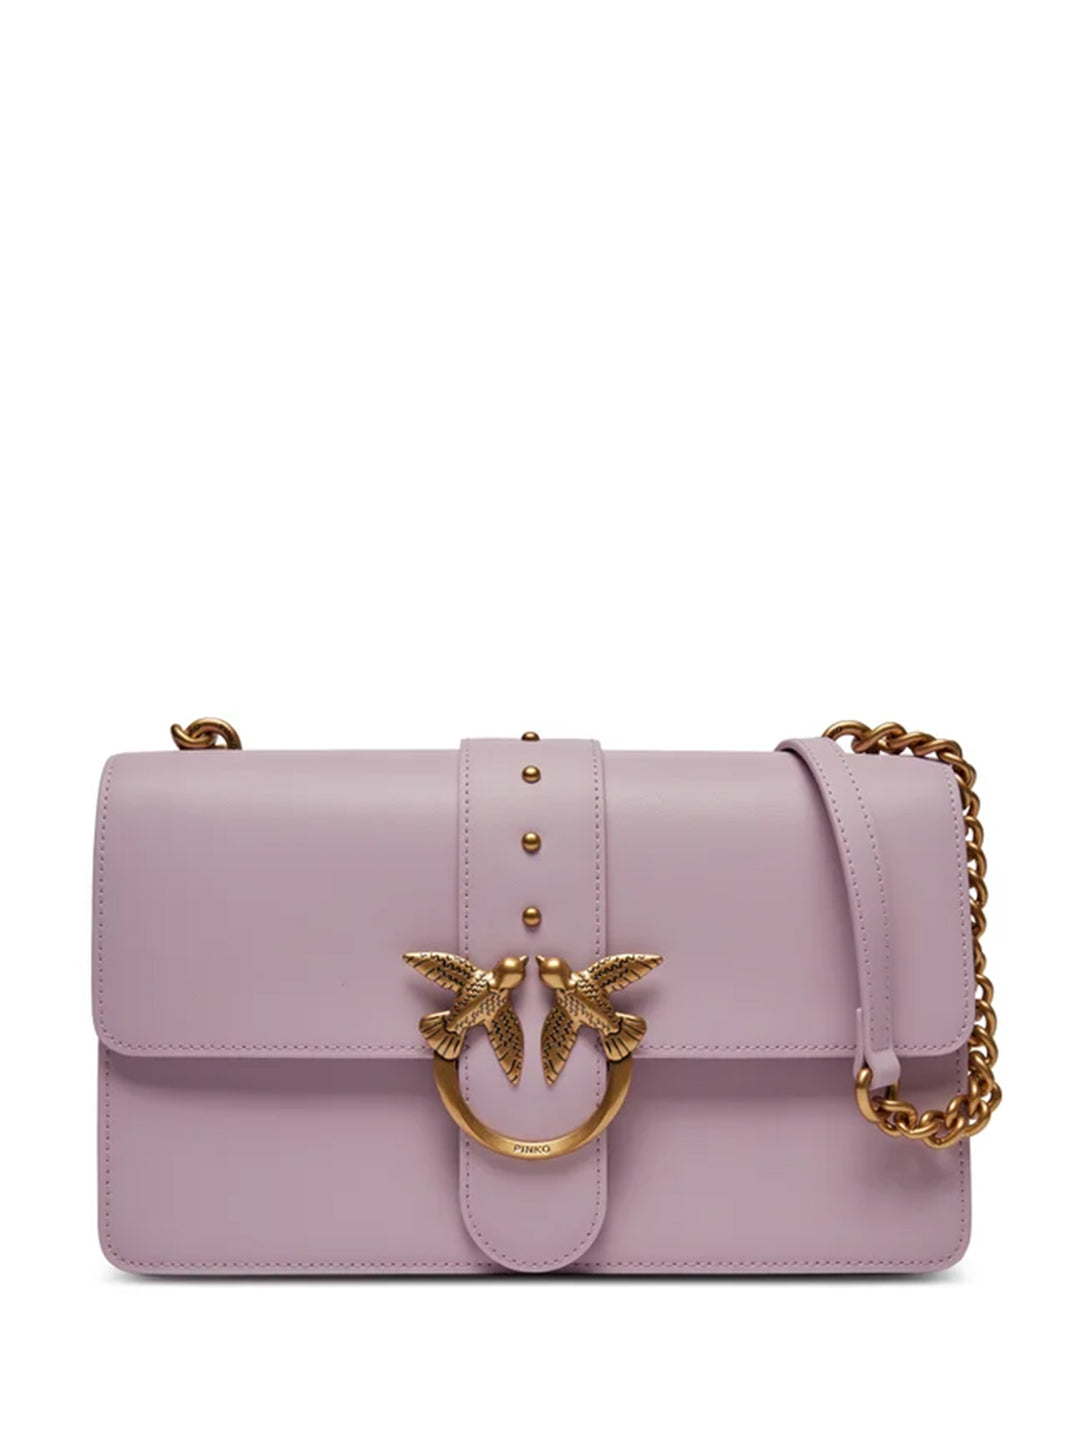 Pinko Mini Love One Classic CL borsa lilla con borchie e logo oro